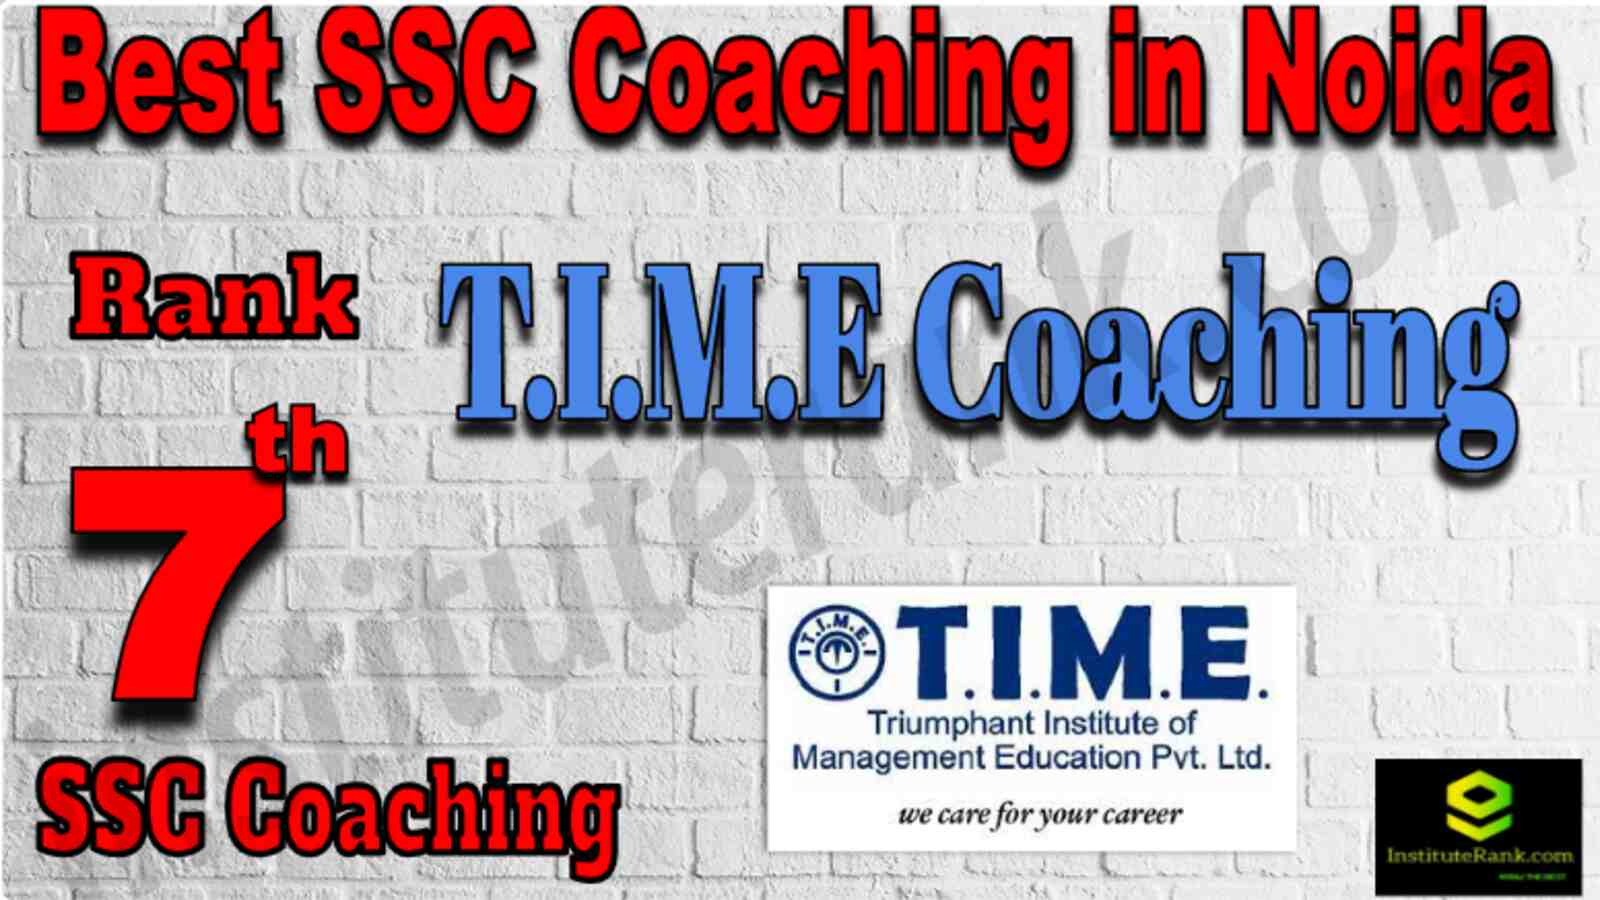 Rank 7 Top SSC Coaching in Noida 